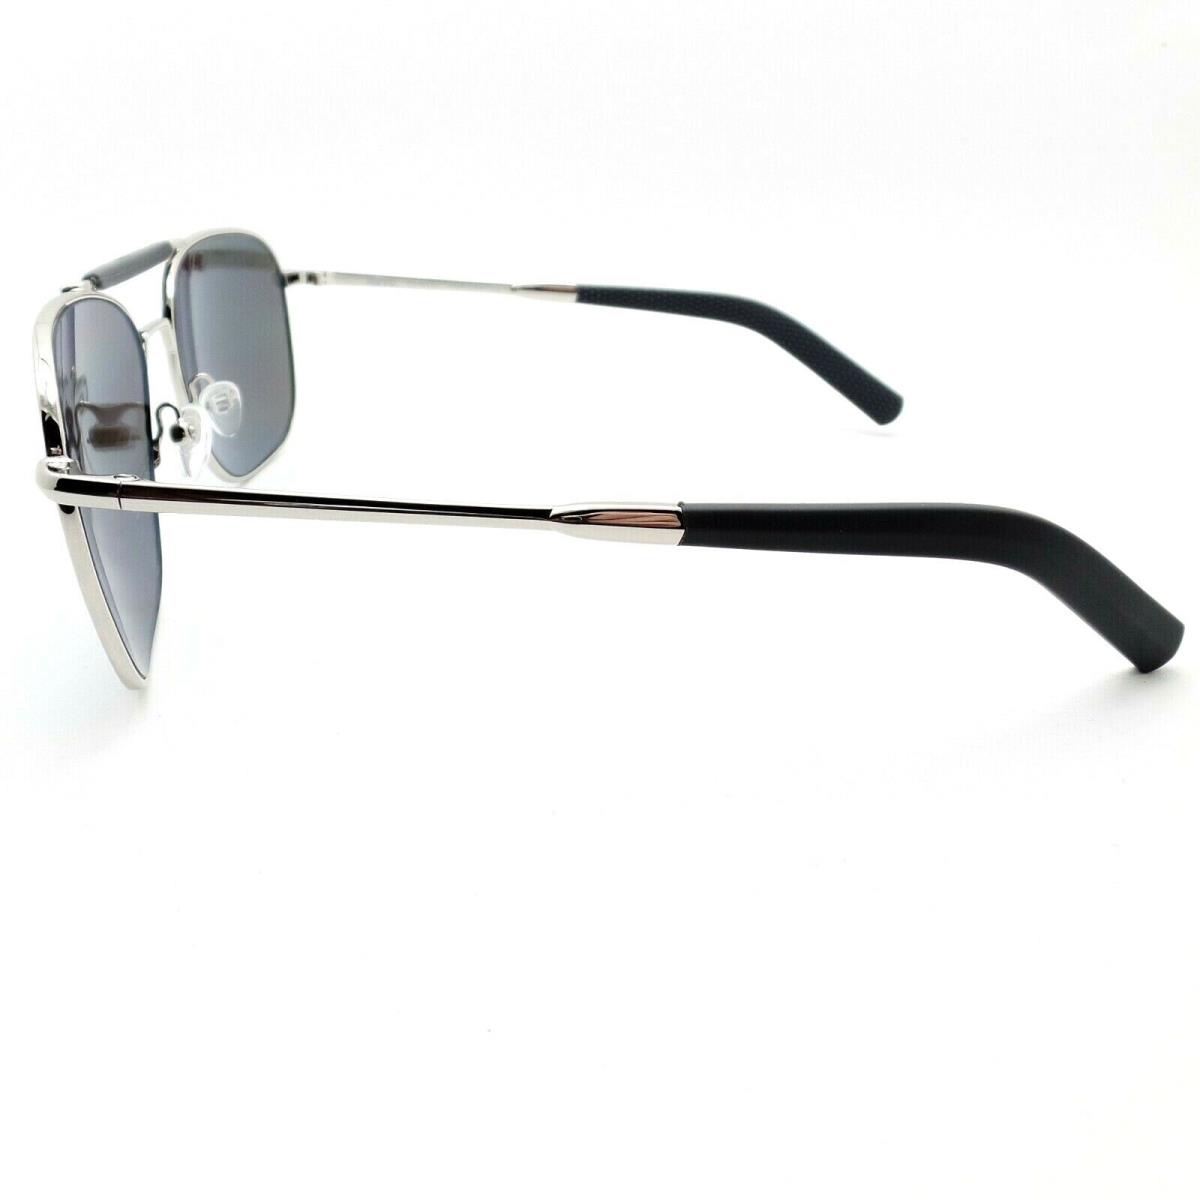 Revo sunglasses  - Chrome Grey , Chrome Frame